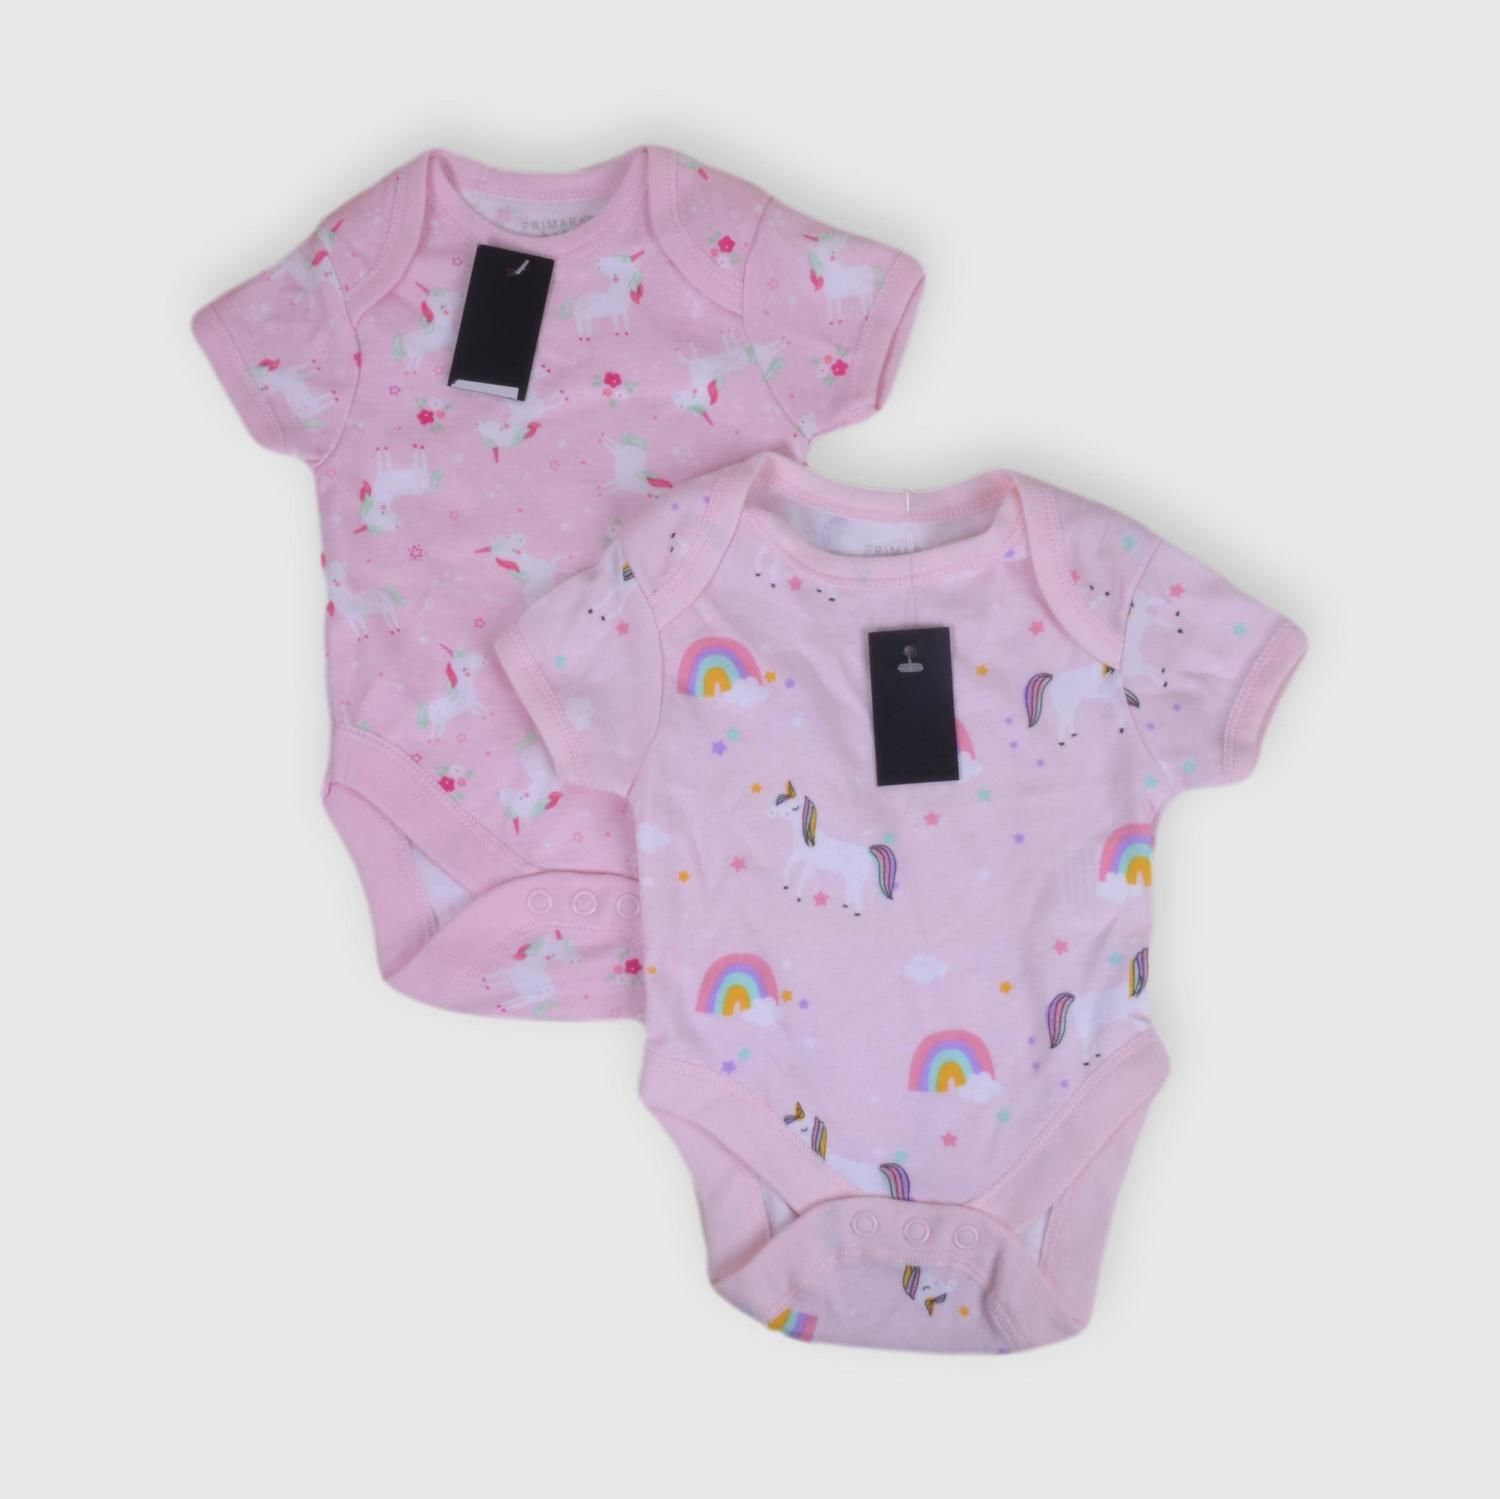 Pack bodies Primark m *Nuevo - Ronda online de ropa de segunda para bebés y niños